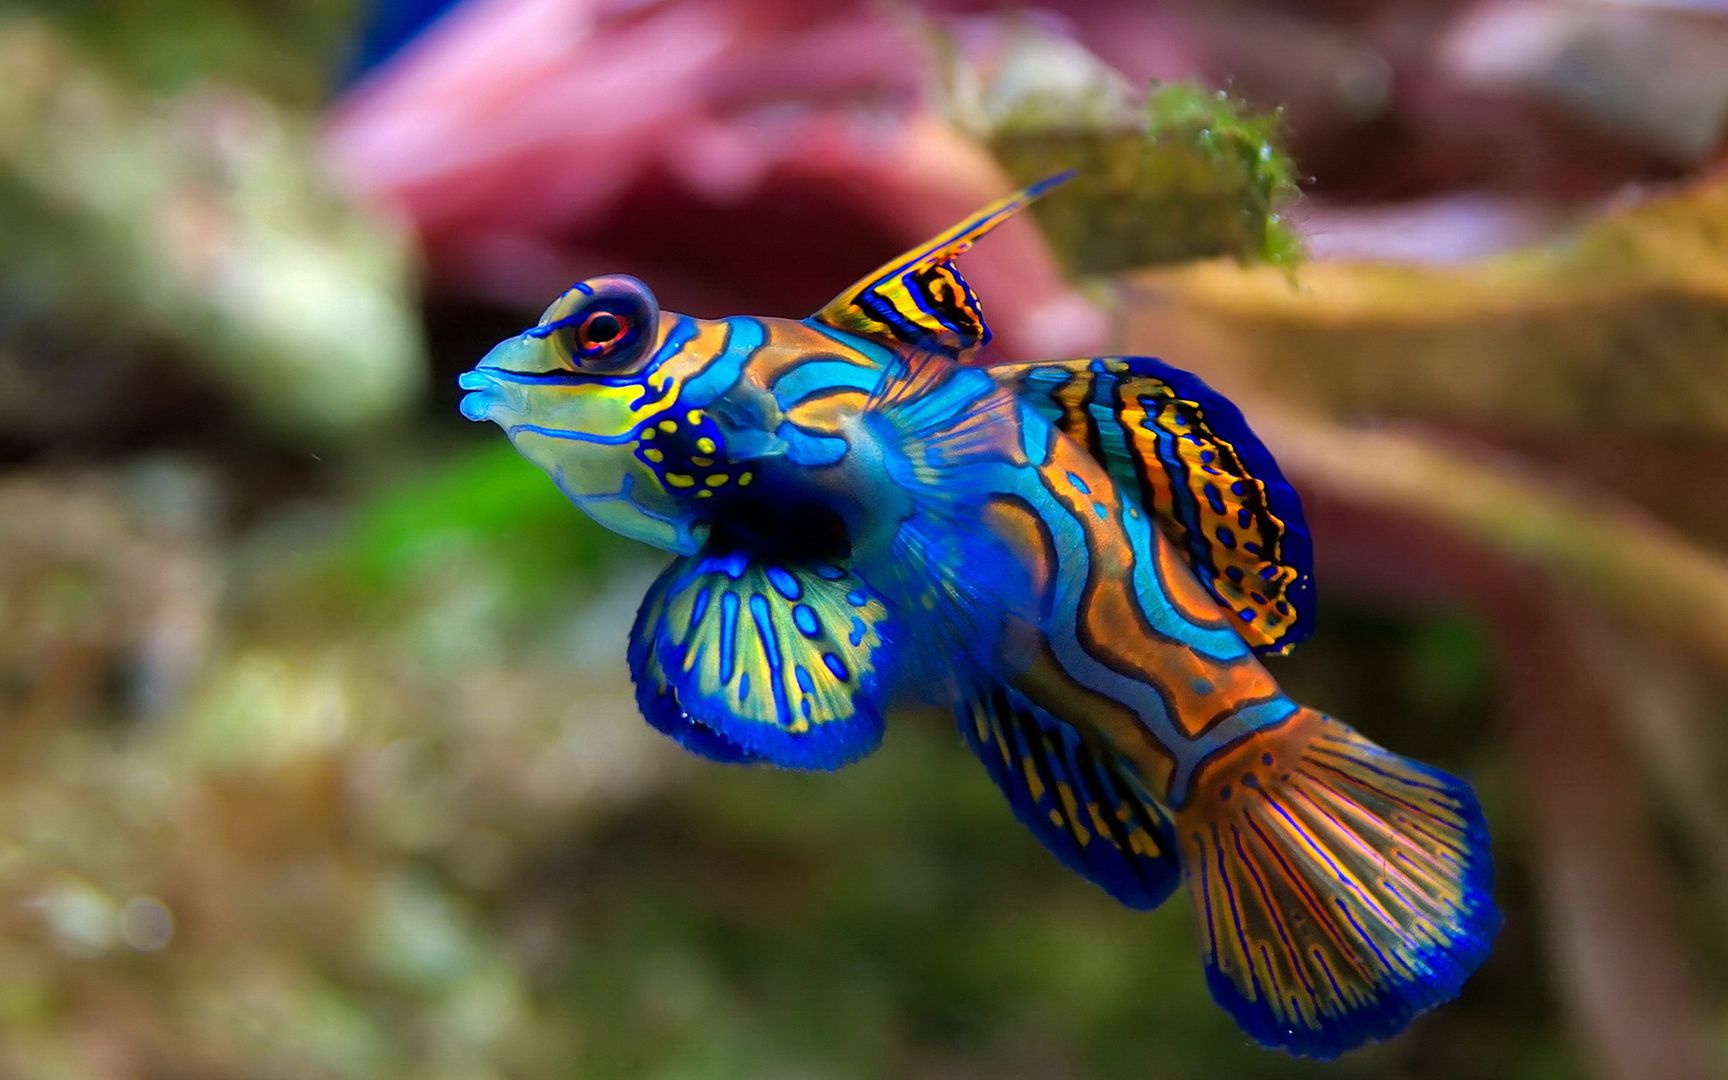 海底世界各种热带鱼类五颜六色奇形怪异桌面壁纸